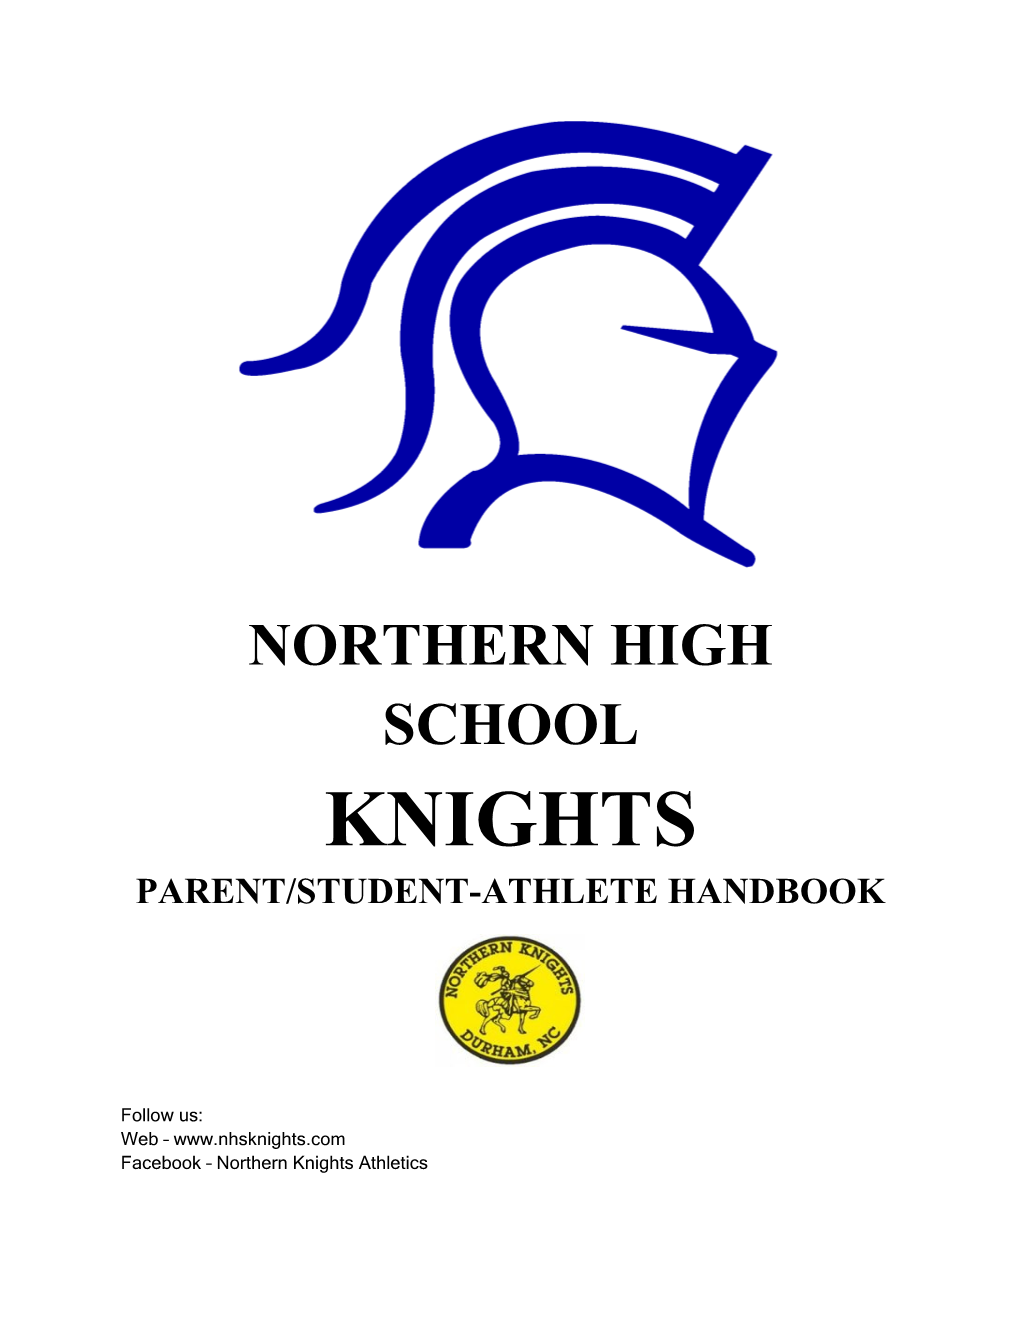 Northern High School Knights Parent/Student-Athlete Handbook